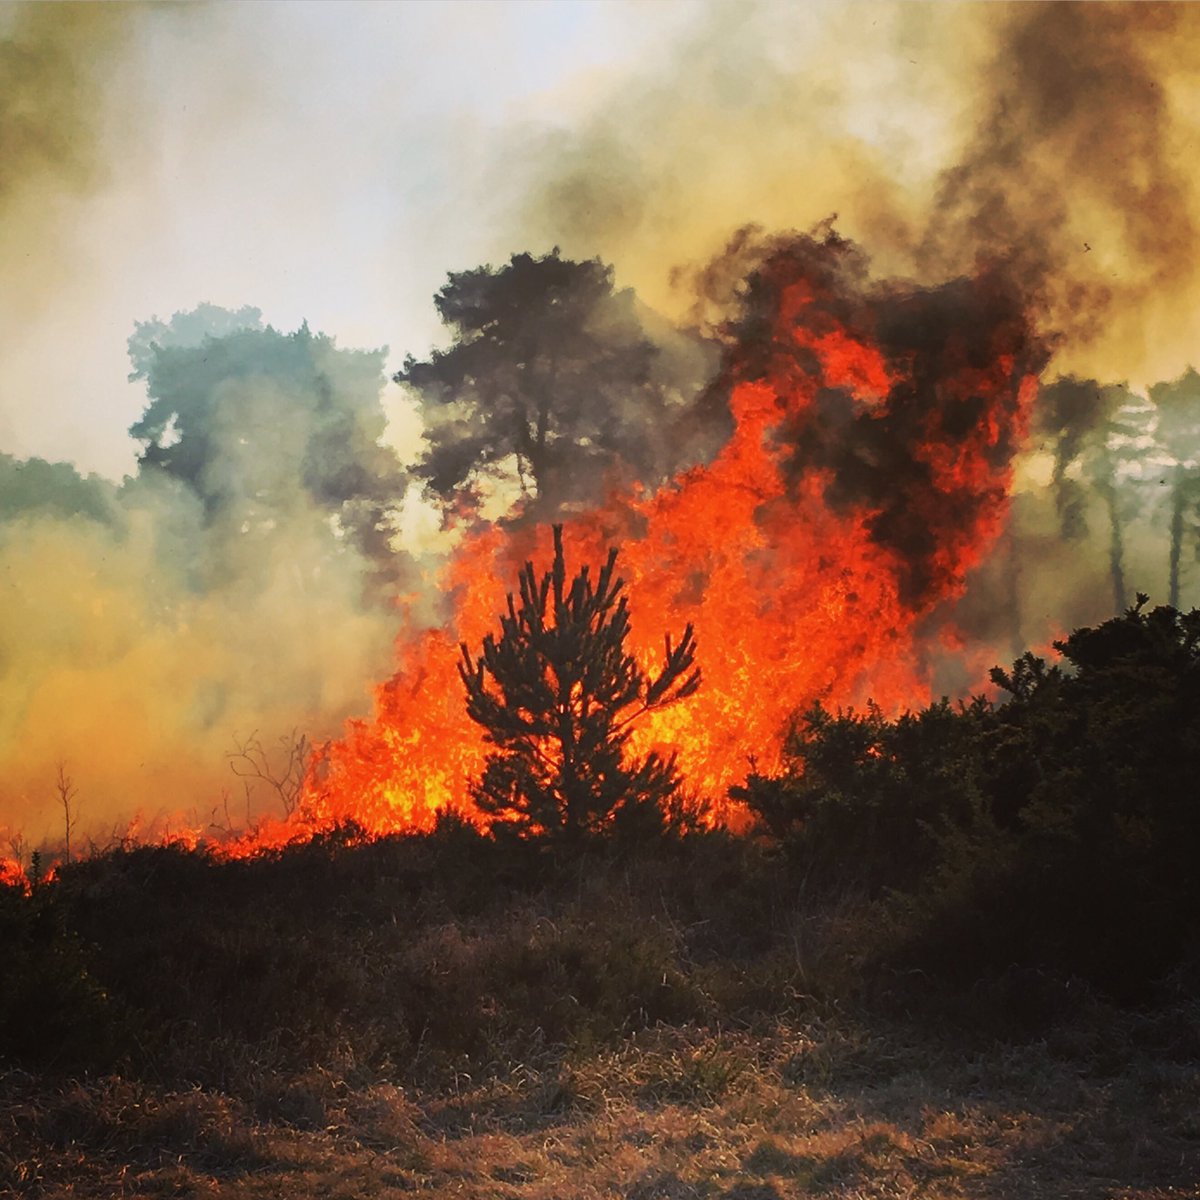 セレン 英語キュレーター در توییتر くまのプーさんで有名な 100エーカーの森 のモデルになったアッシュダウンの森が山火事で燃えている